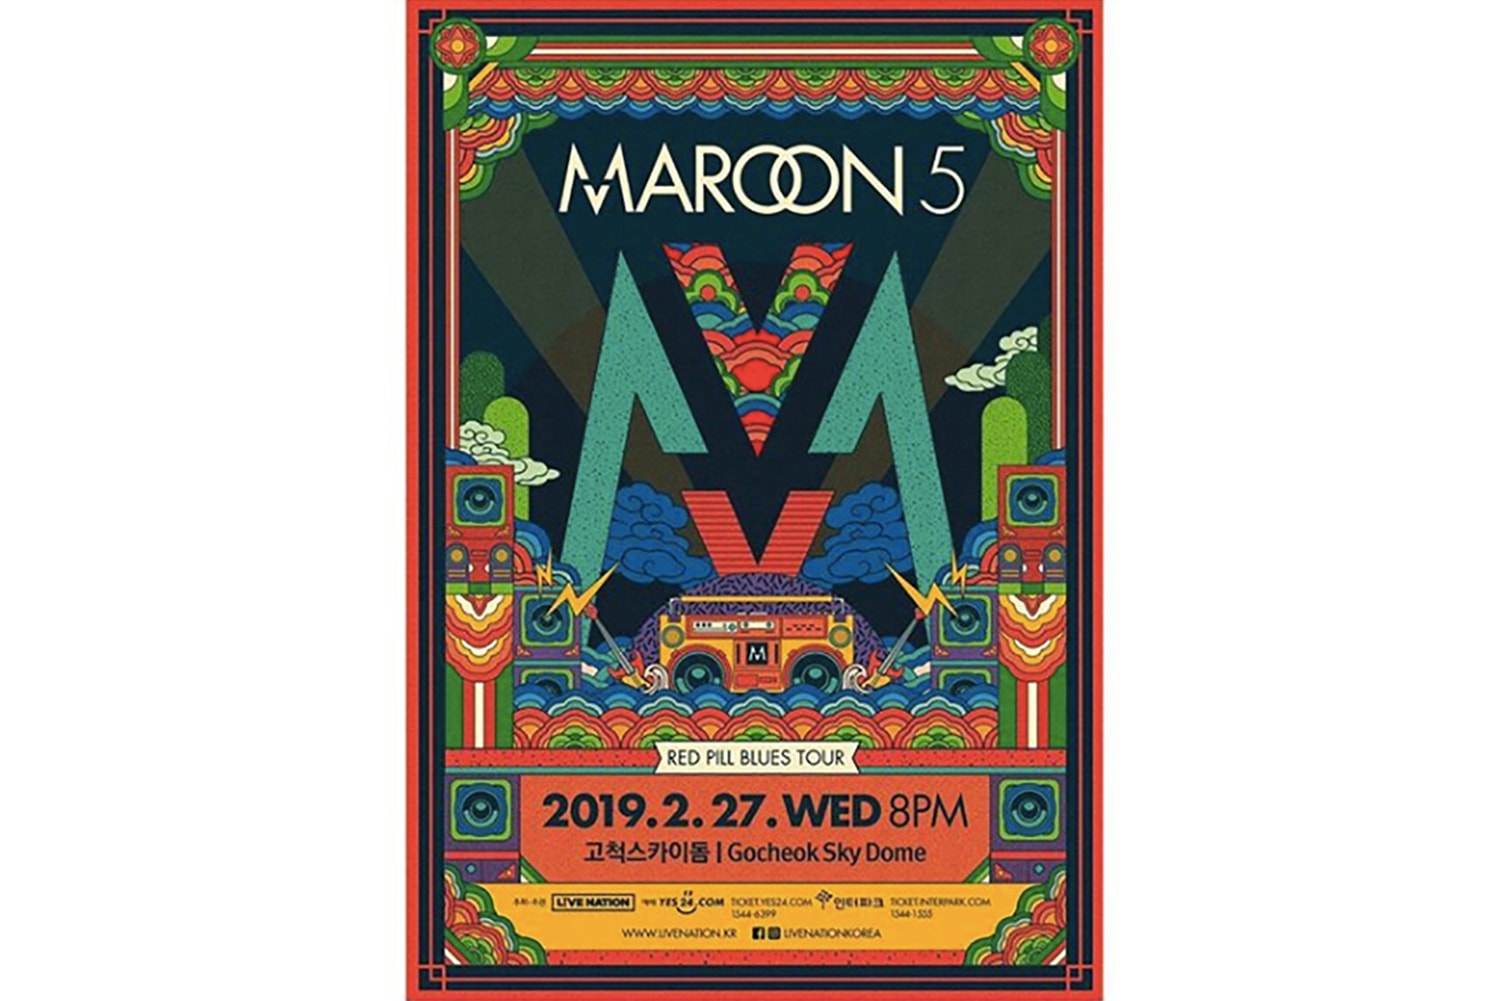 마룬 파이브 2019 내한 콘서트 포스터 공개 마룬 5 maroon 5 고척 <Red Pill Blues> 레드 필 블루스